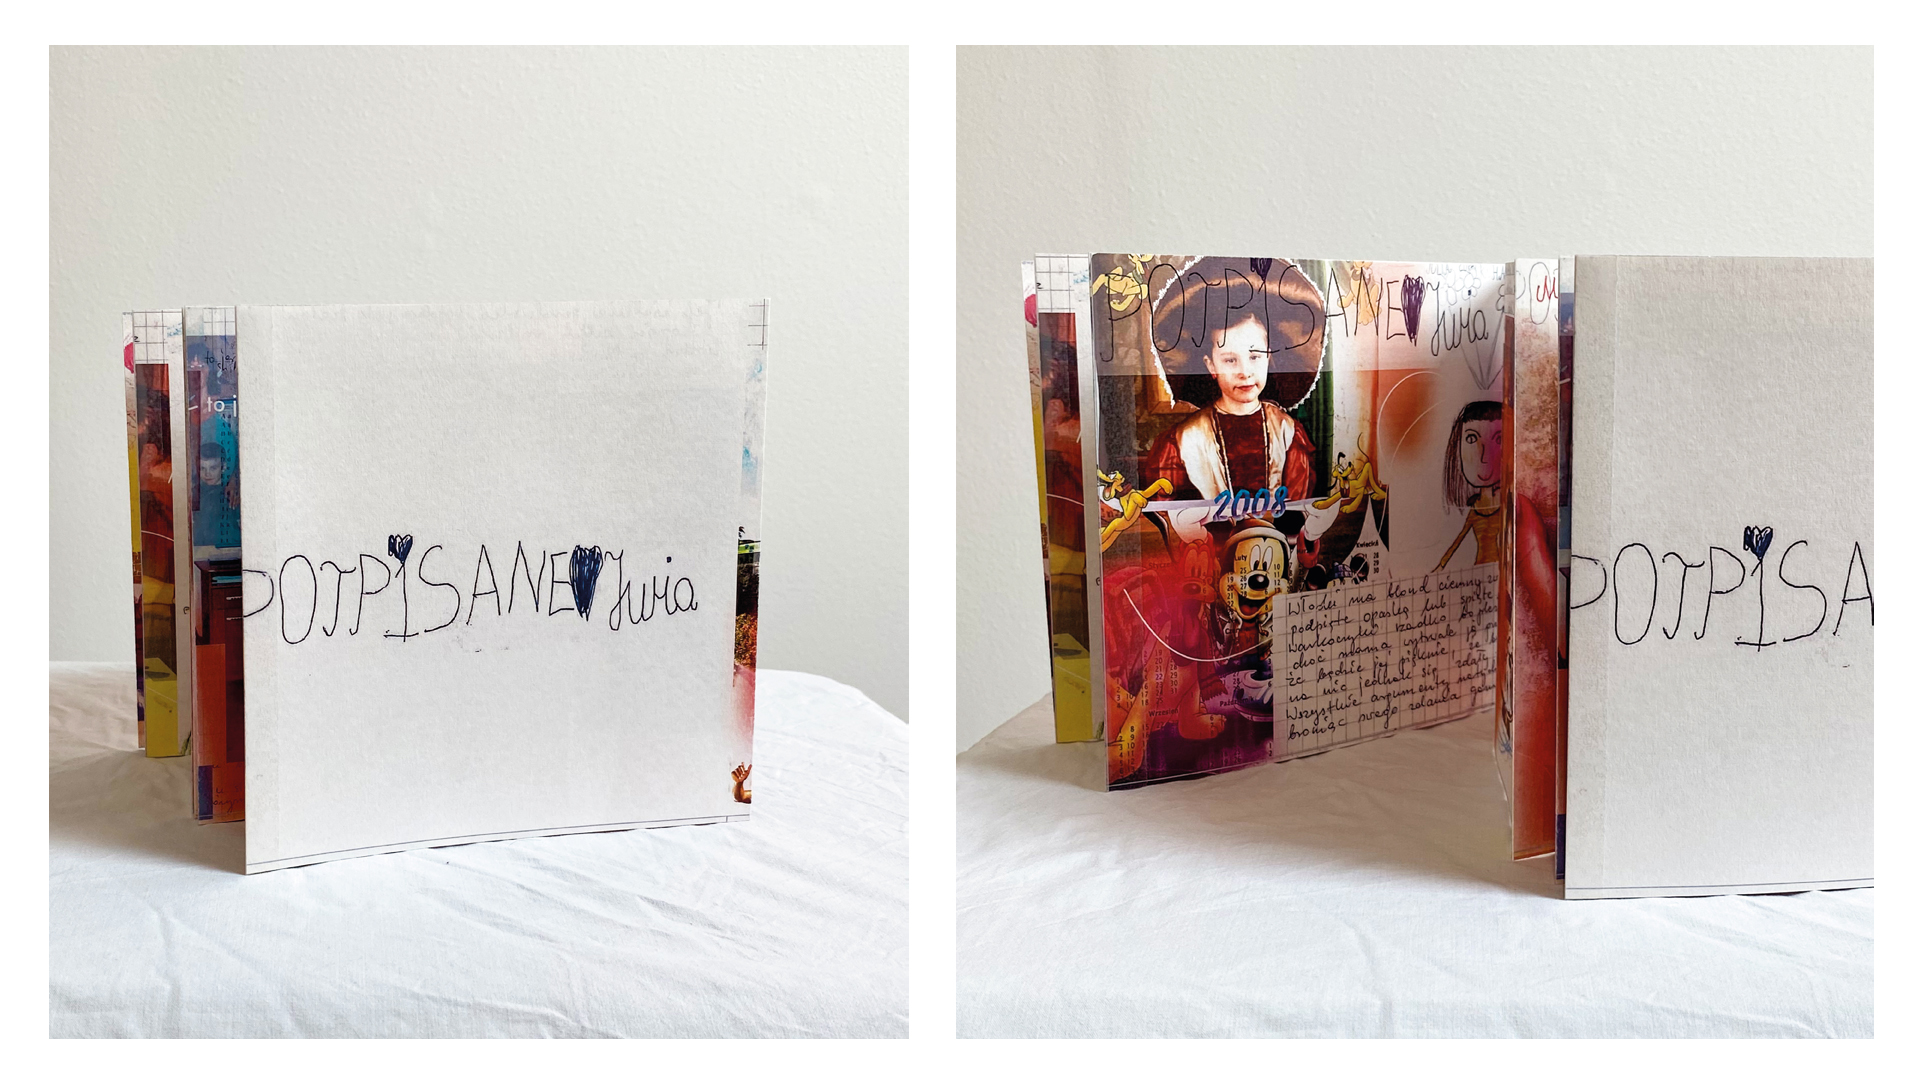 Dwa zdjęcia książeczki typu harmonijka. Zdjęcie z lewej strony 	ukazuje okładkę z napisem PODPISANO JULIA, a fotografia z prawej to zbliżenie na wnętrze książki ukazujące foto-kolaż z 	kolorowych rysunków dziecięcych i wizerunków znanych z popkultury 	lat 90-tych.